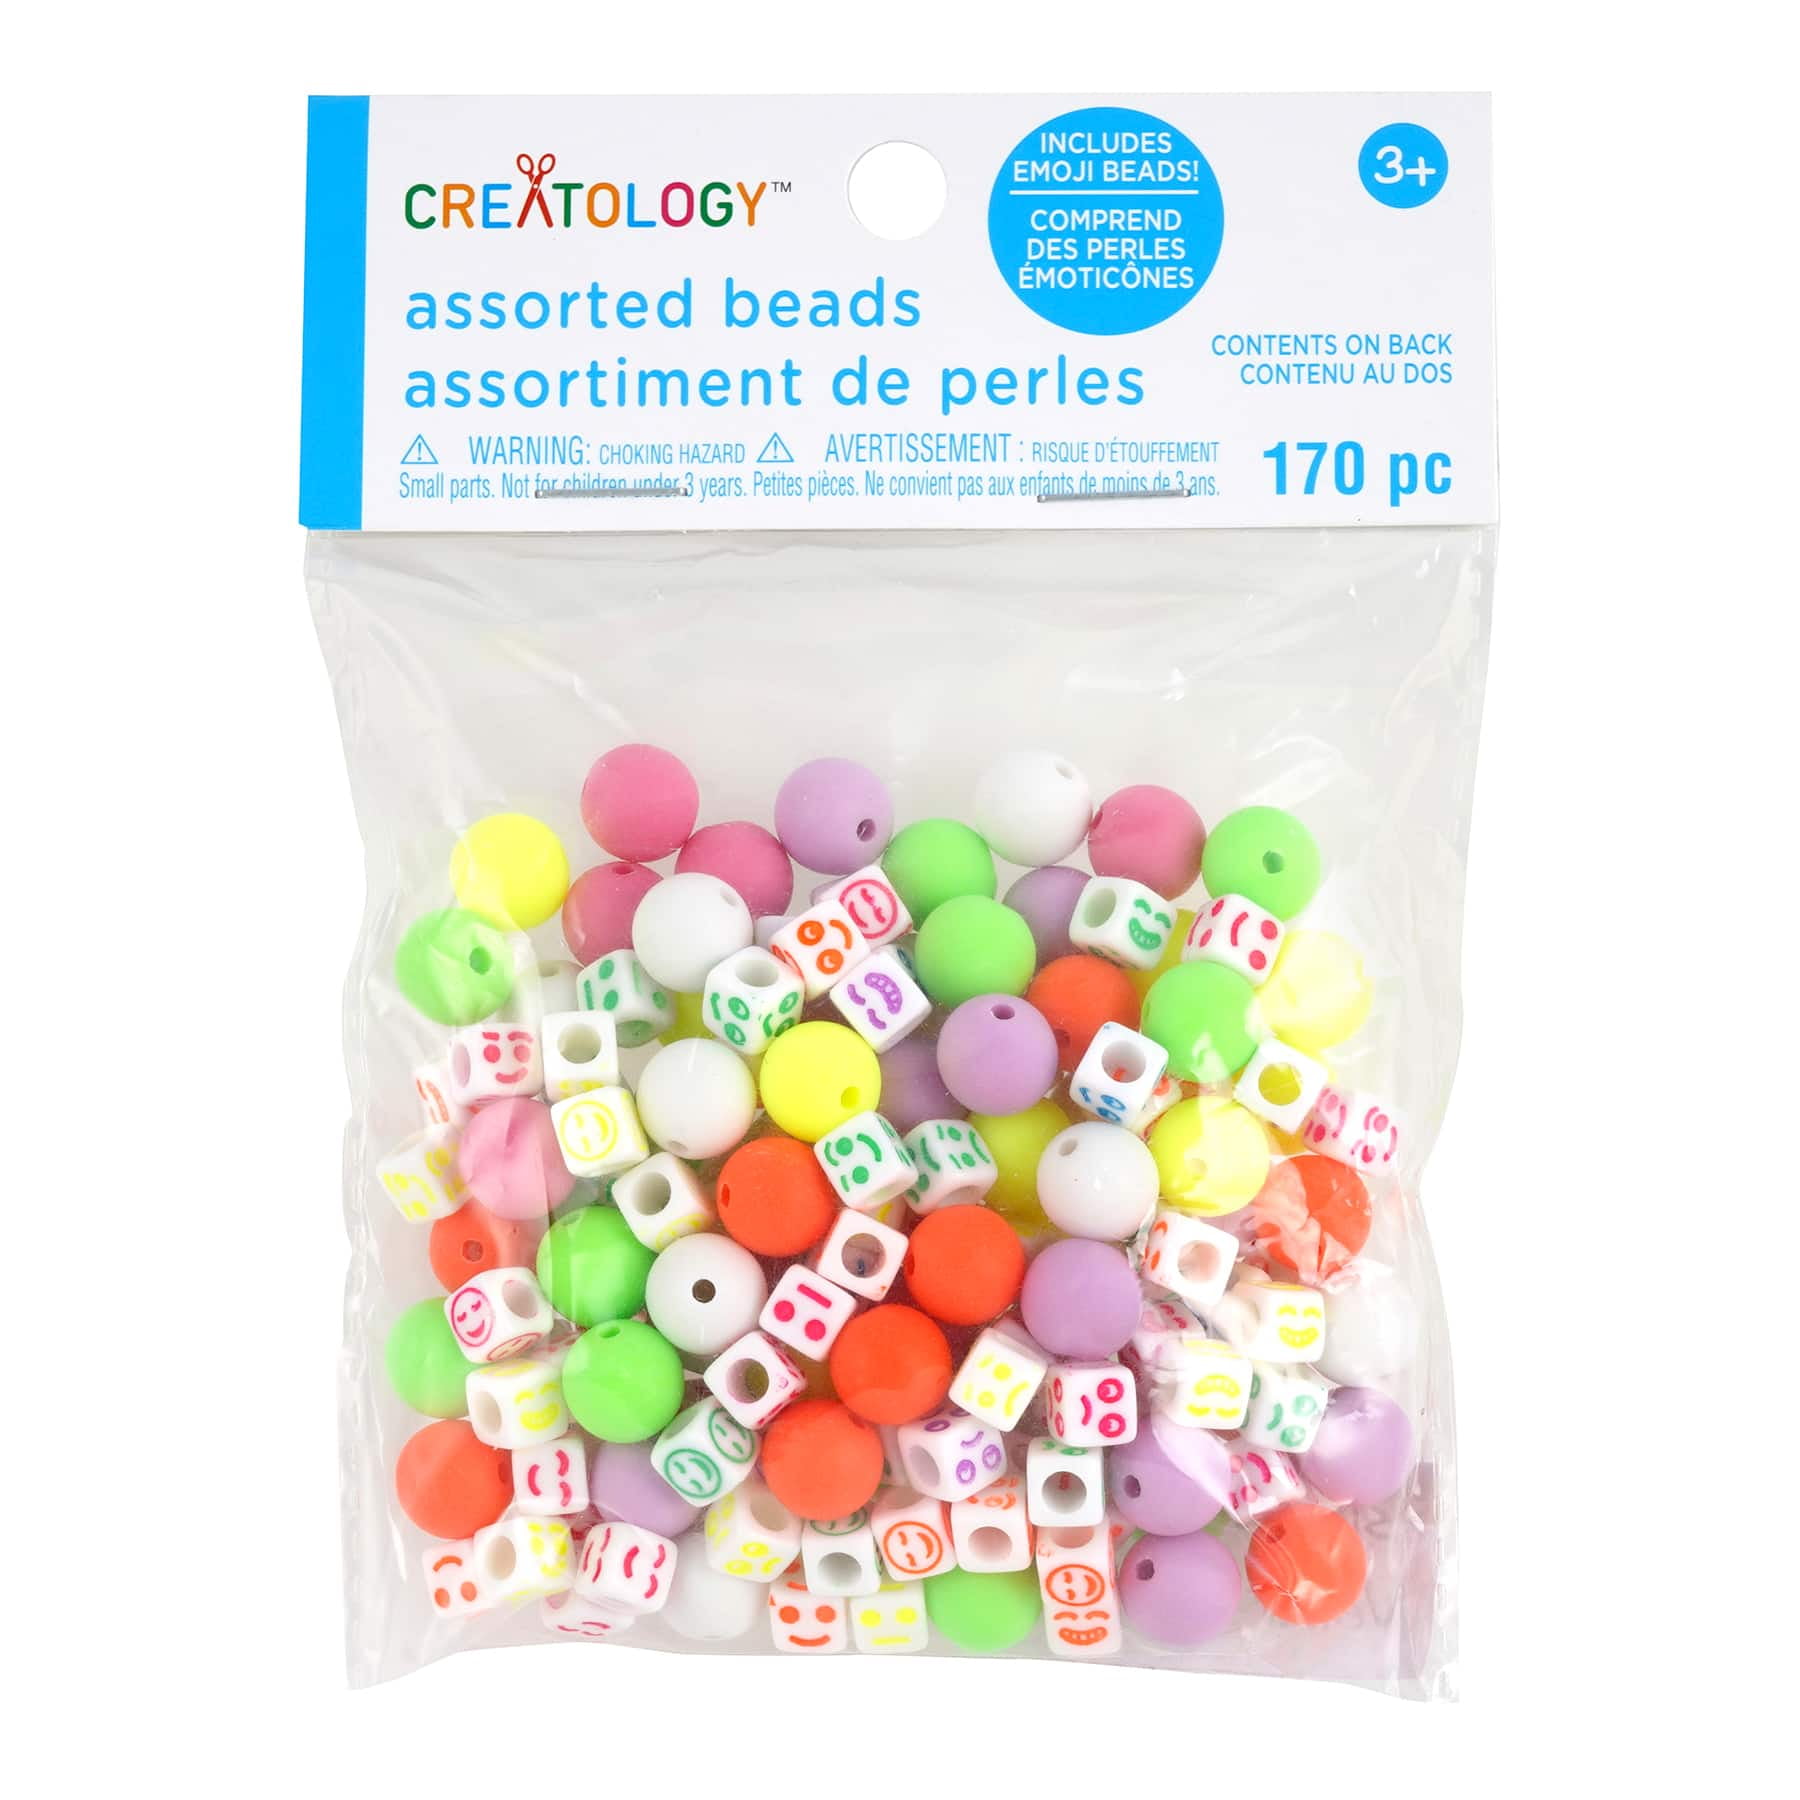 hoofdonderwijzer Weigeren dealer MICHAELS Bulk 12 Packs: 170 ct. (2,040 total) Neon Emoji Bead Mix by  Creatology™ - Walmart.com